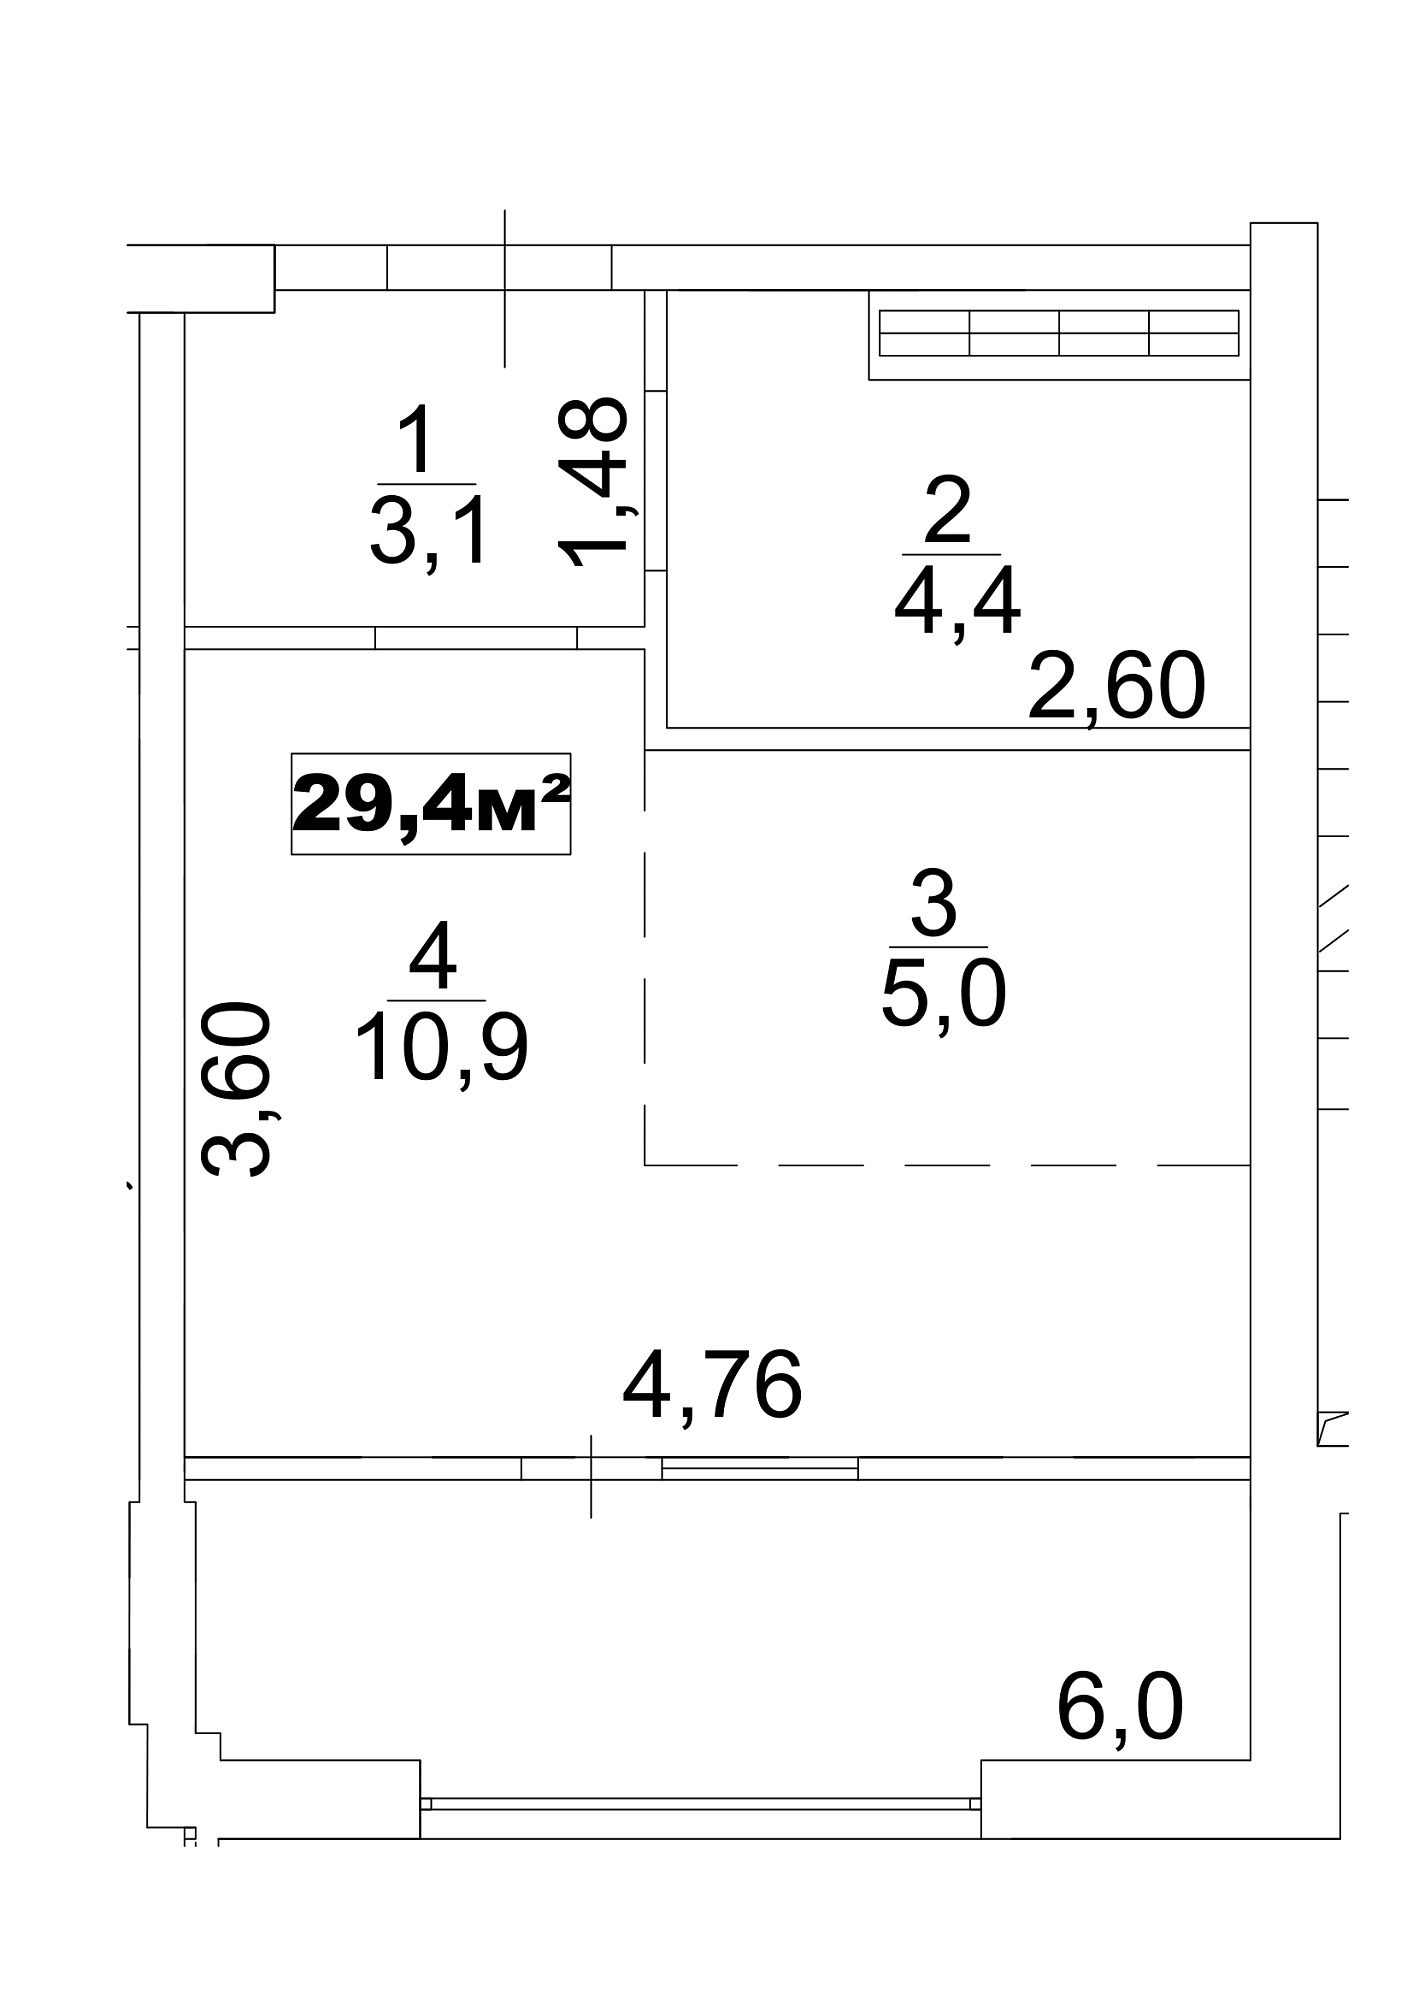 Планировка Smart-квартира площей 29.4м2, AB-13-09/0070а.